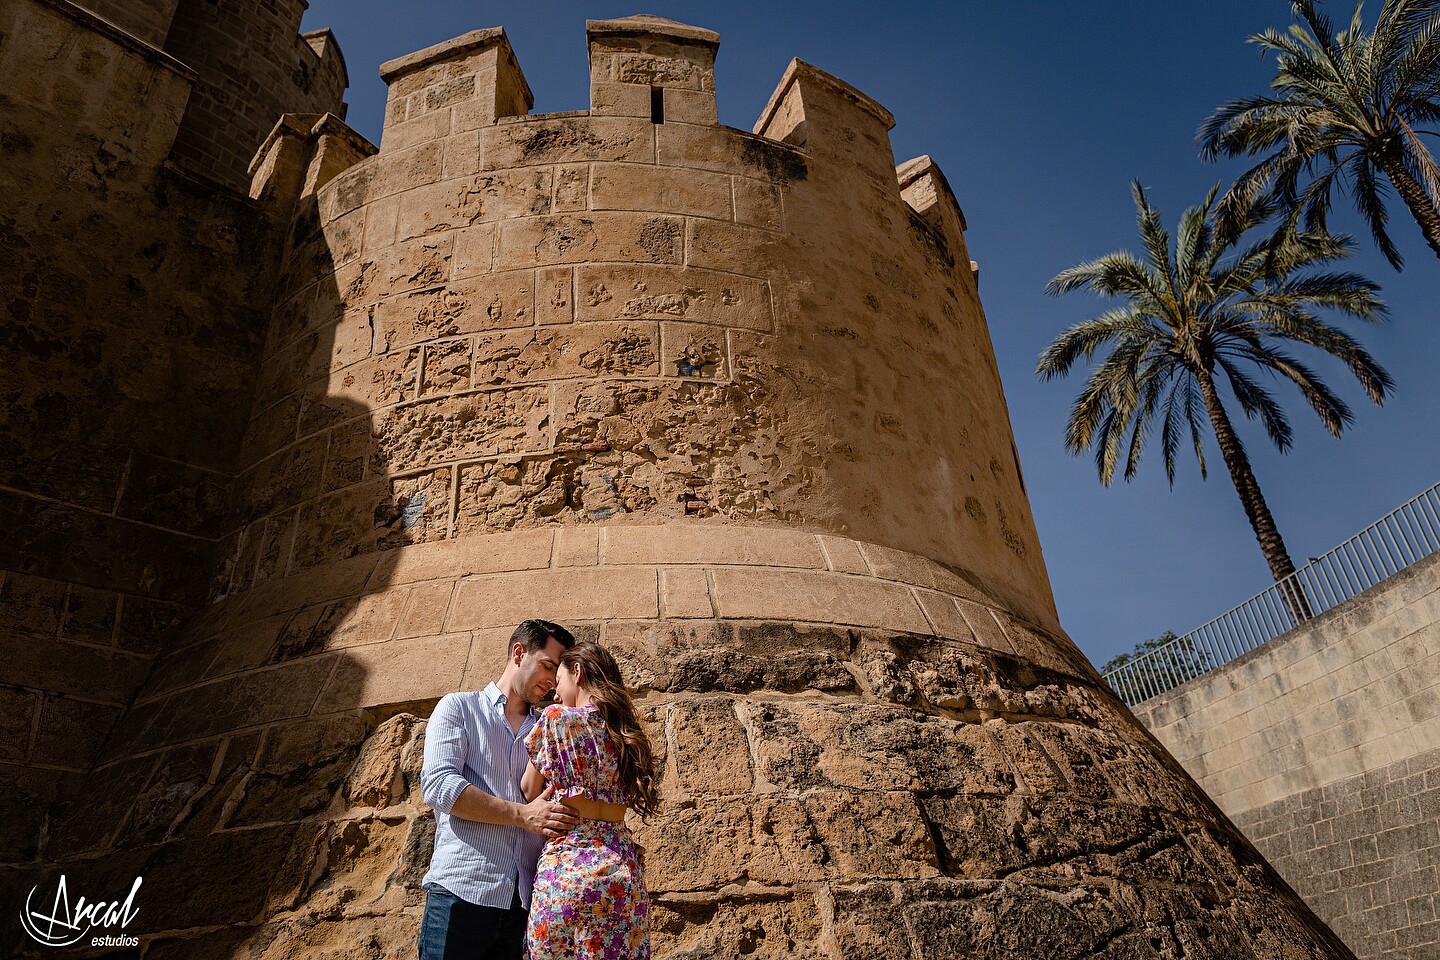 012_Ana y Álvaro pre boda en puente romano de córdoba, novios en torre de la calahorra, patios cordobeses y calleja de las flores.JPG